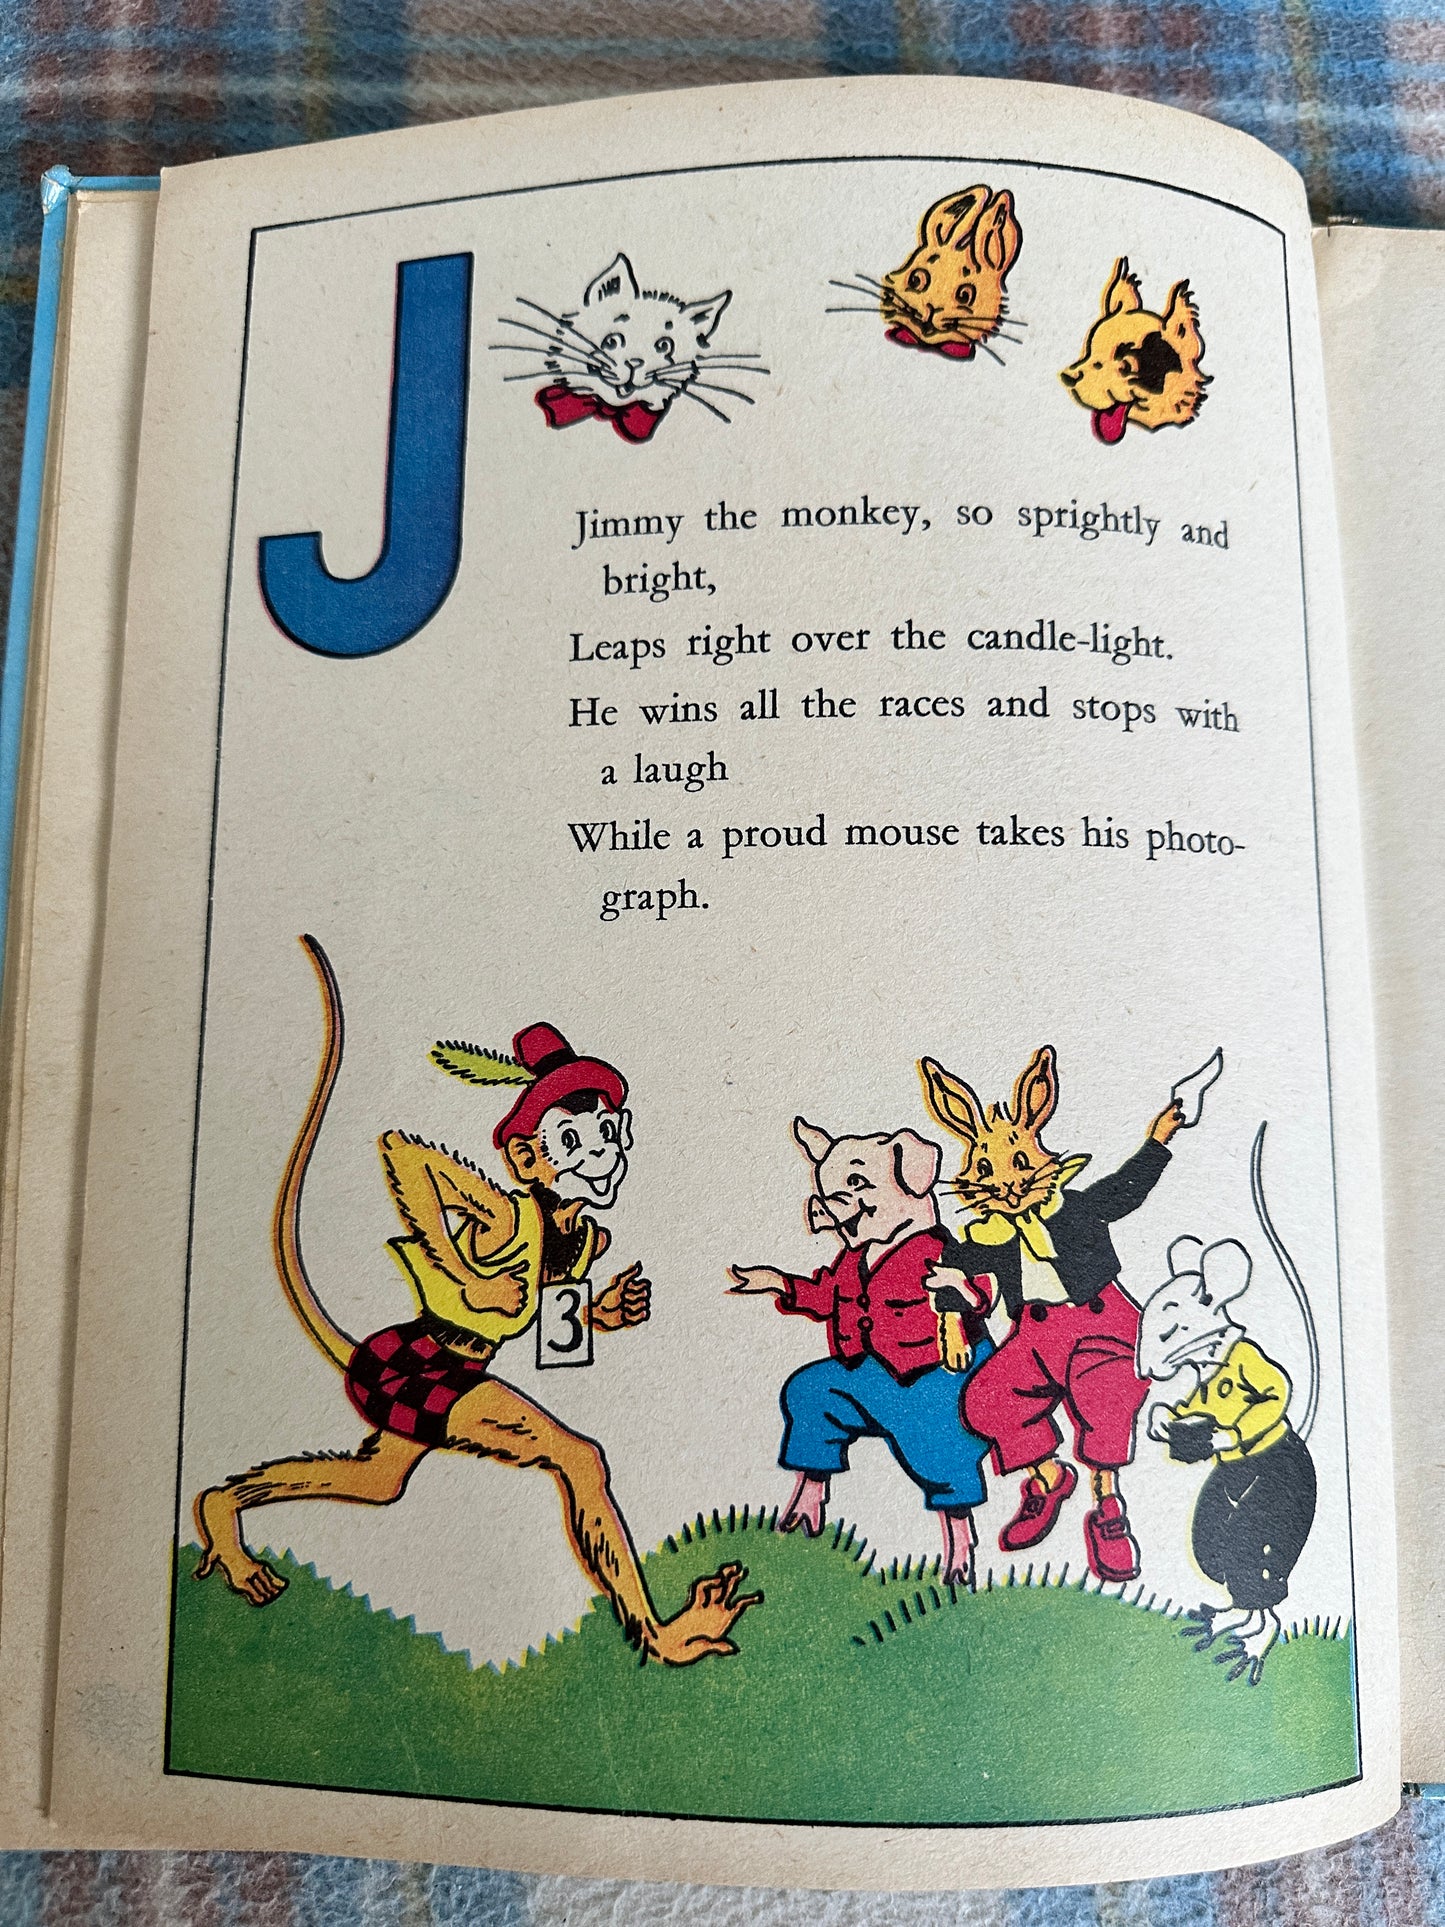 1963 All Colour Picture ABC - illustration by Fel(Juvenile Productions Ltd)